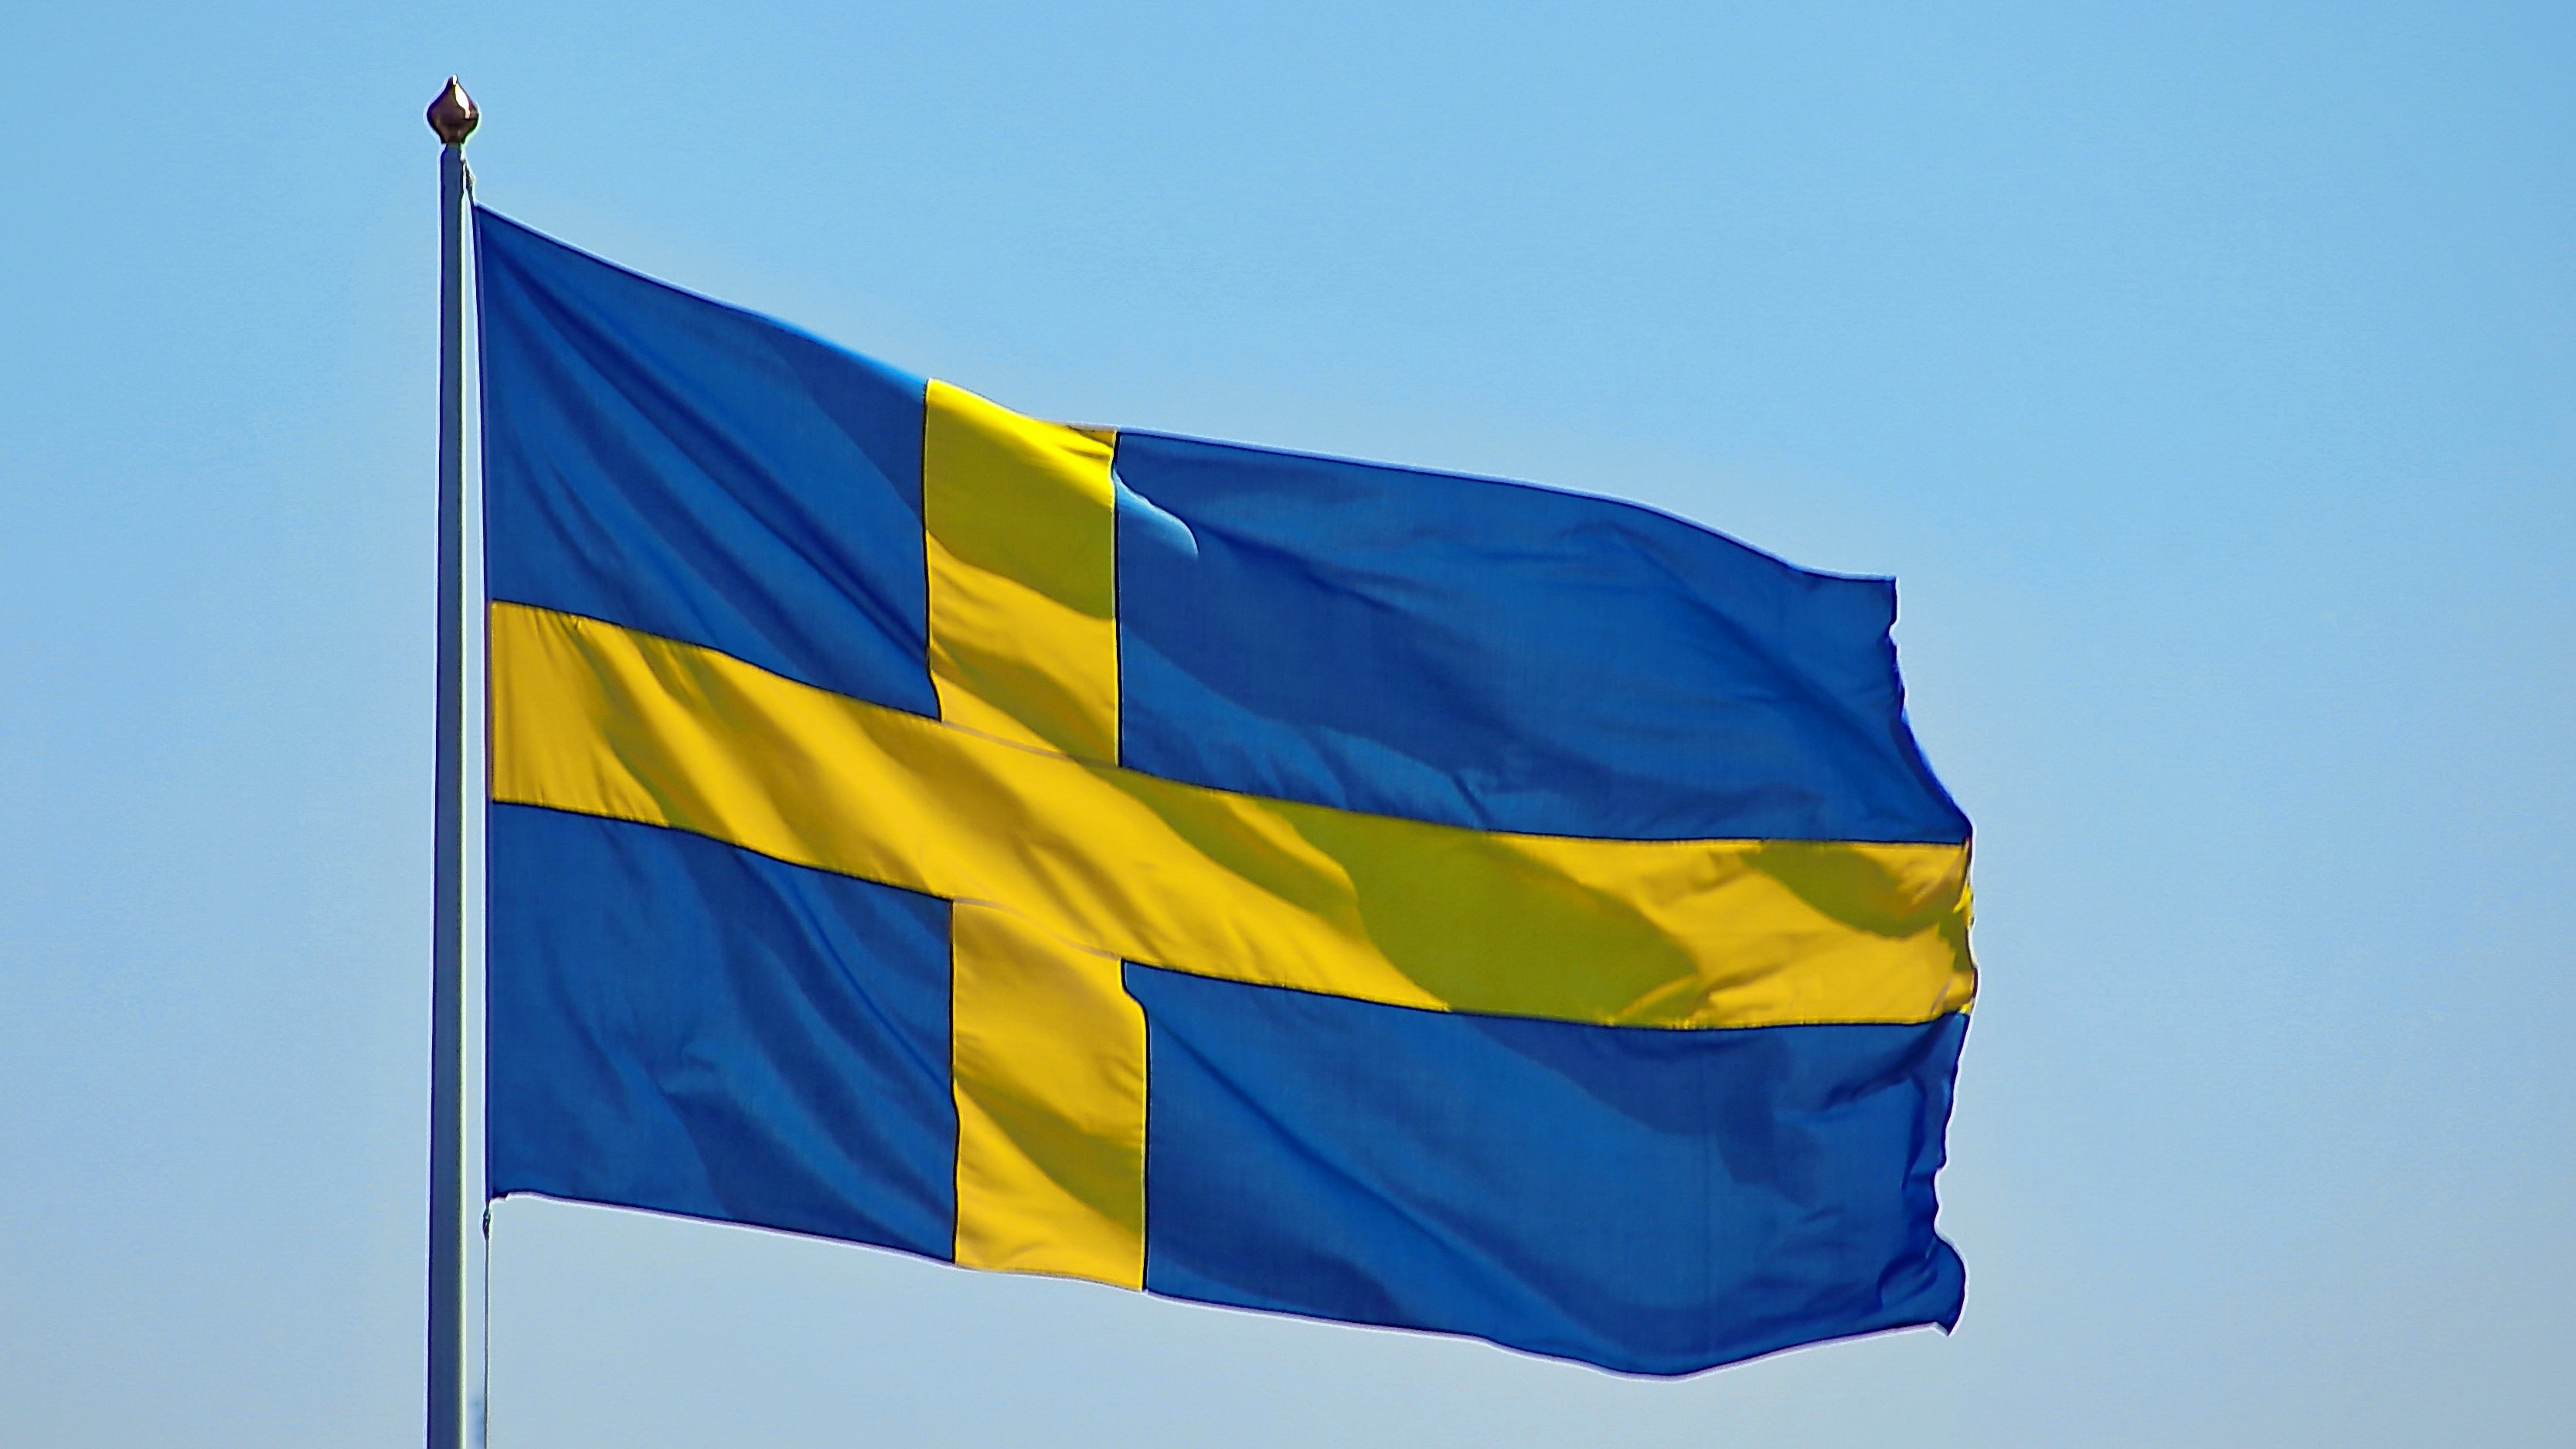 ZVANIČNO OBJAVLJENO Švedska uputila zahtjev za ulazak u NATO